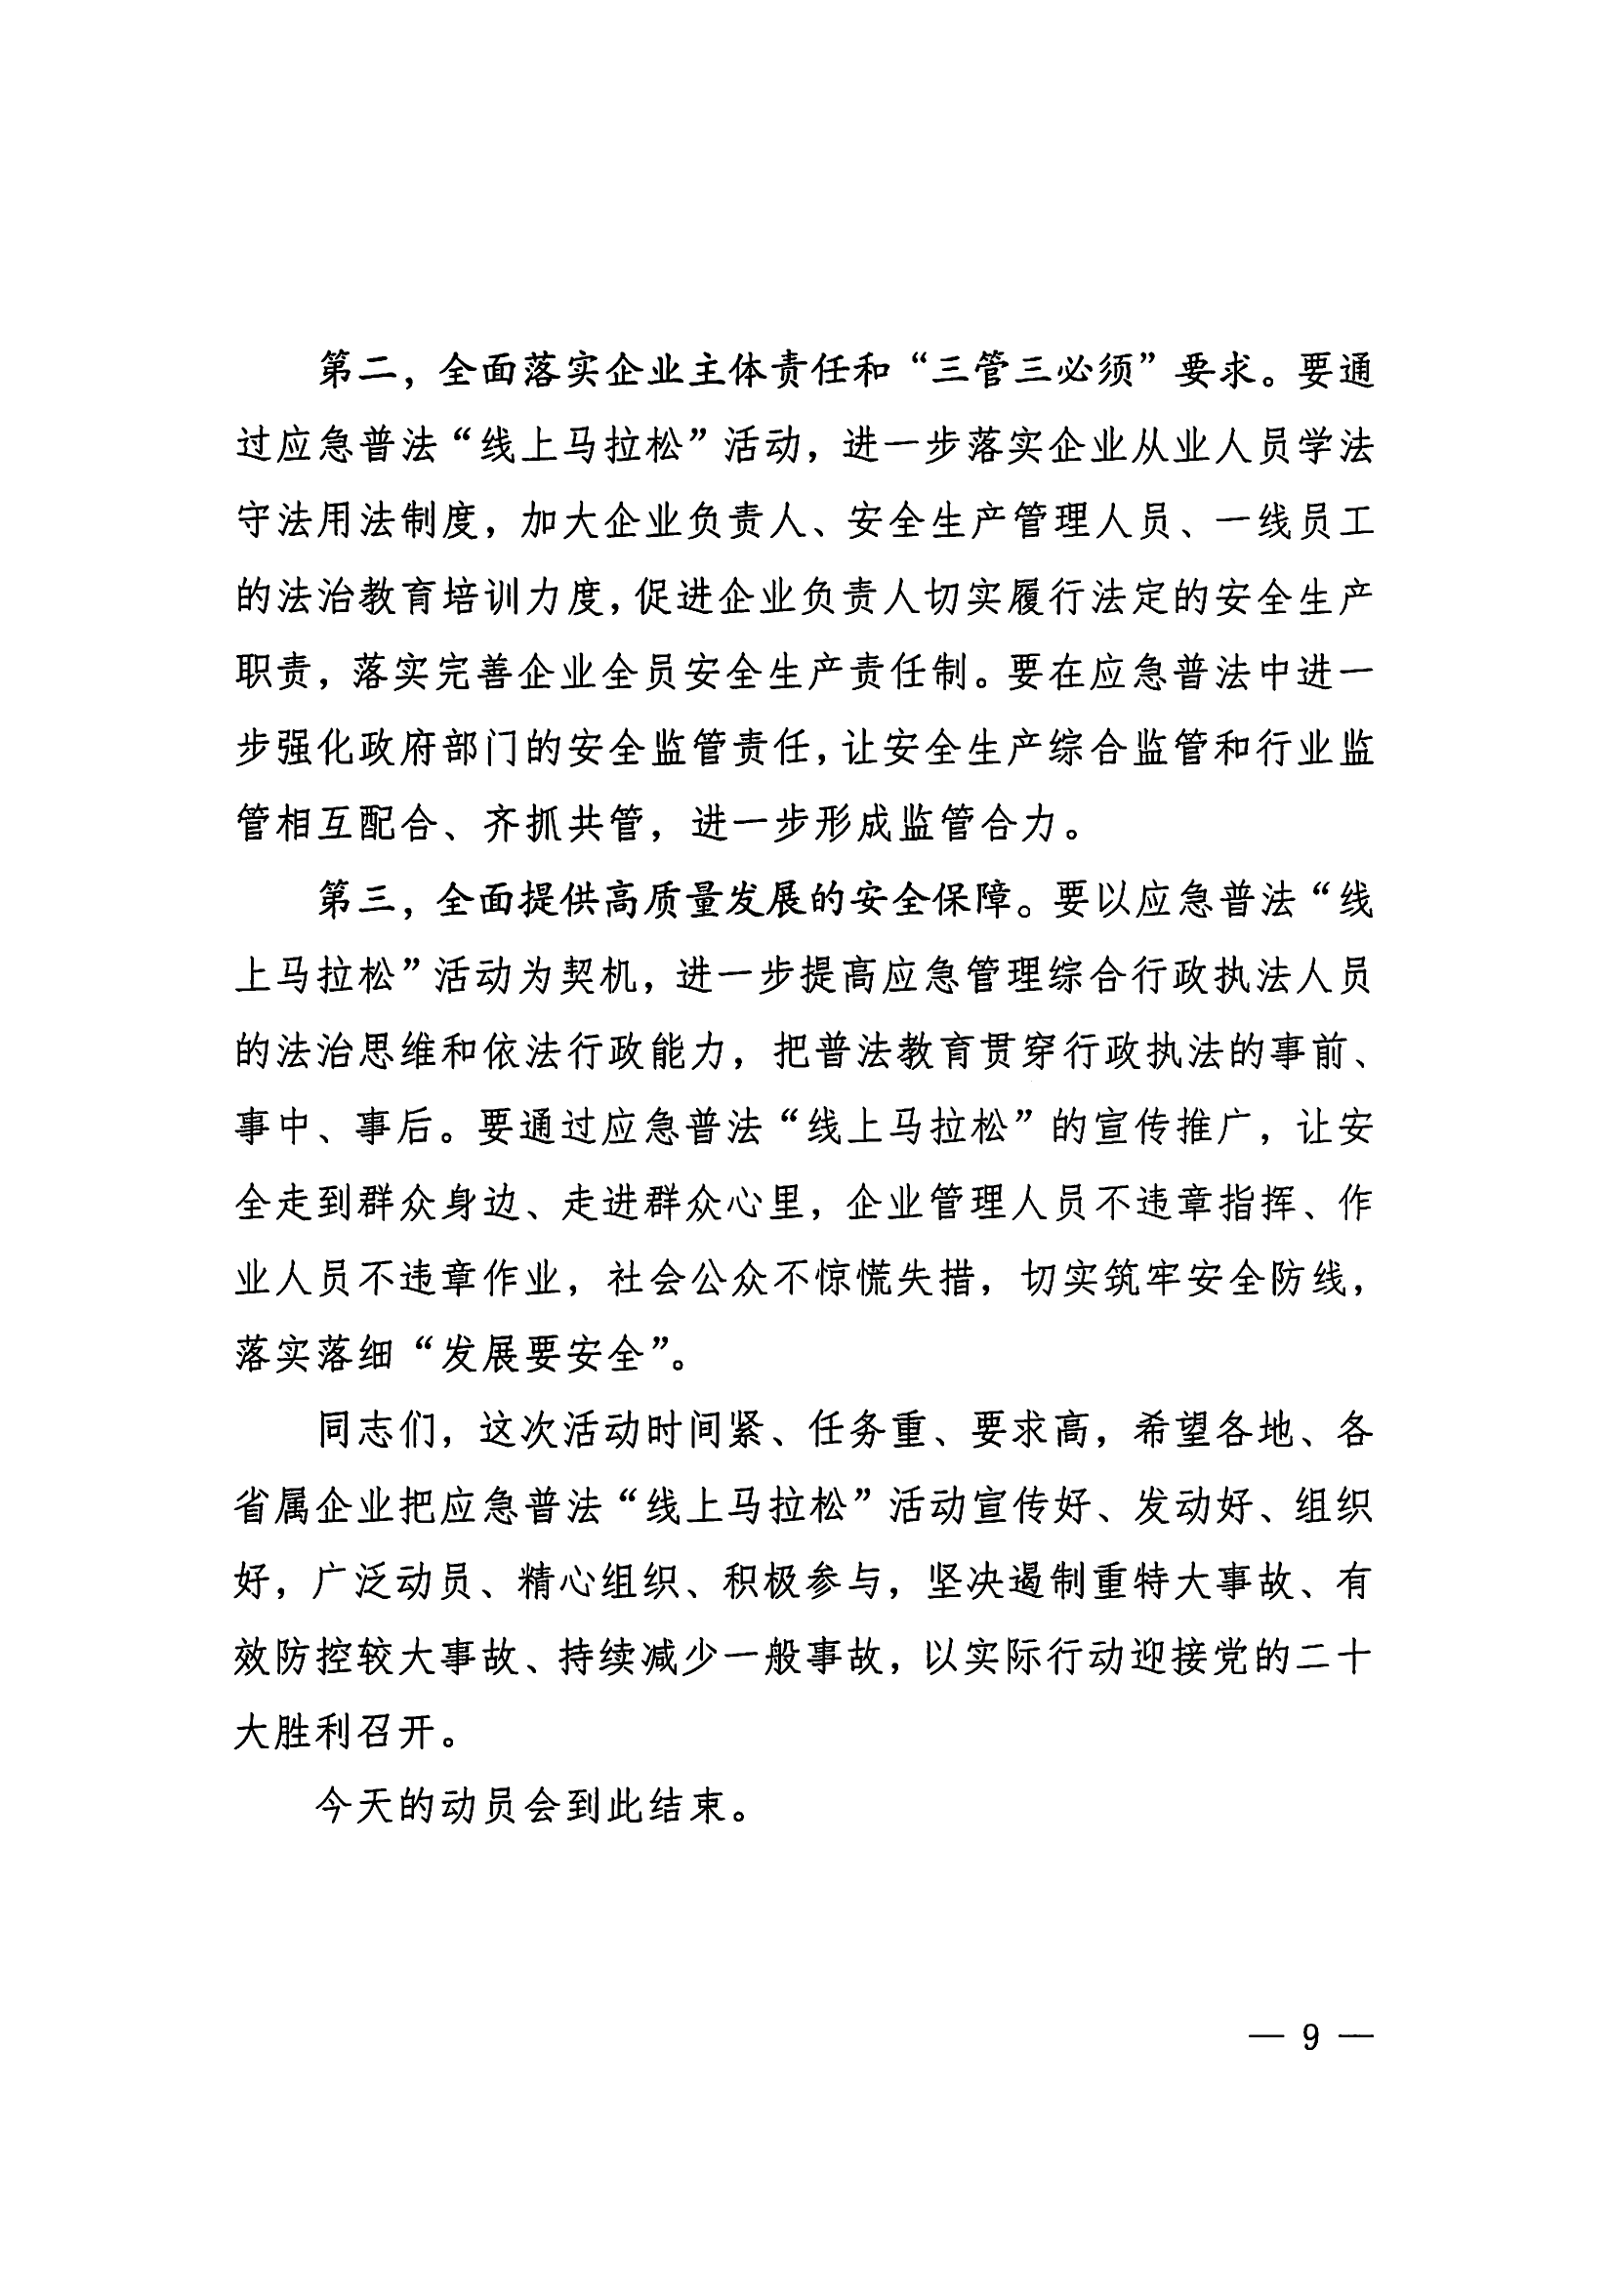 惠州市安全生产委员会办公室转发关于进一步组织开展好广东应急普法“线上马拉松”活动的通知_10.png